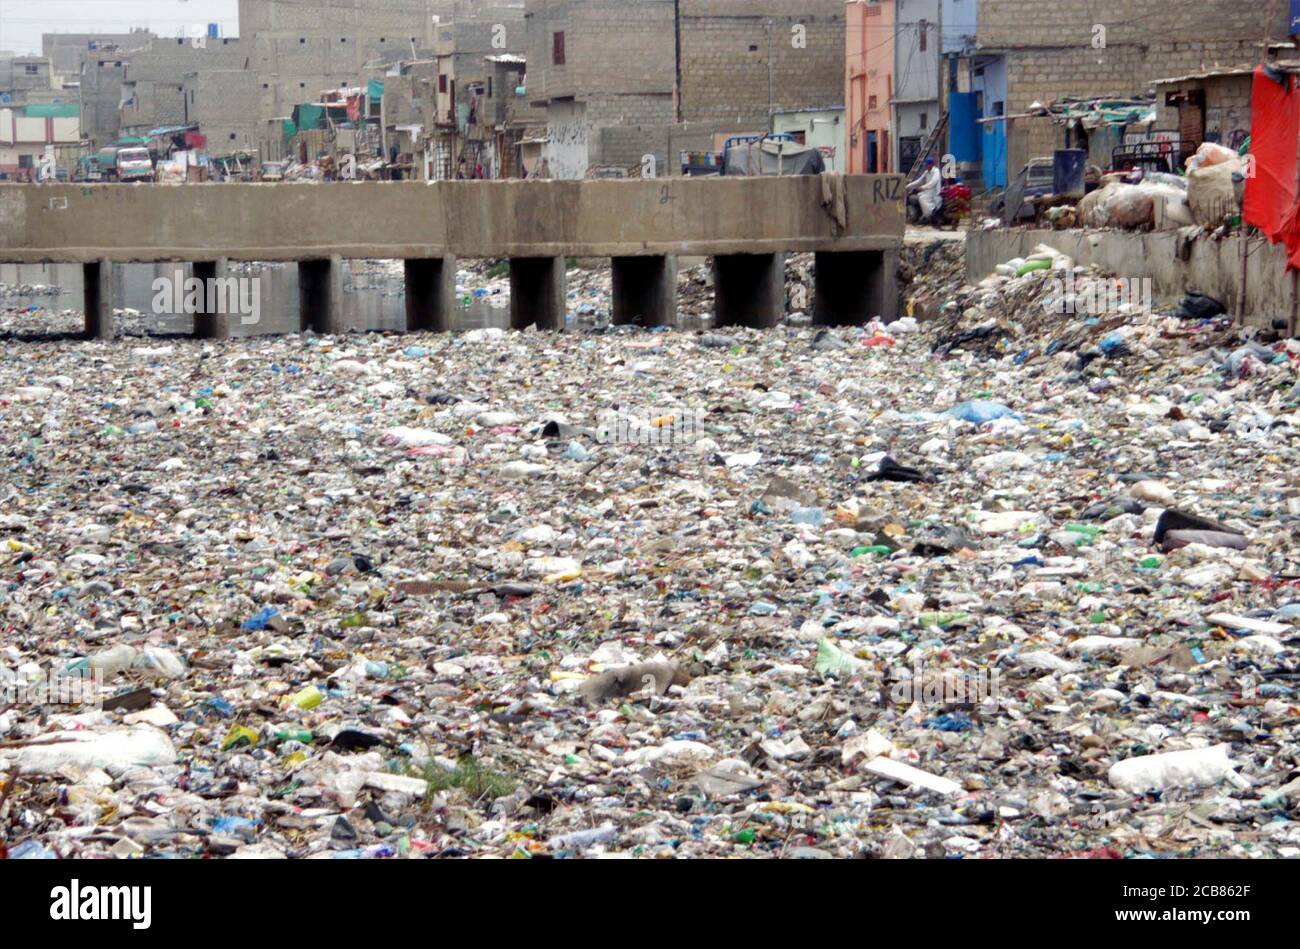 Une vue de l'évacuation d'eau d'égout ouverte qui se remplit de sacs en polyéthylène, de buissons et de déchets créant une atmosphère inhygiénique, montrant la négligence des autorités concernées, situé dans la région de Mehmoodabad de Karachi le mardi 11 août 2020. Banque D'Images